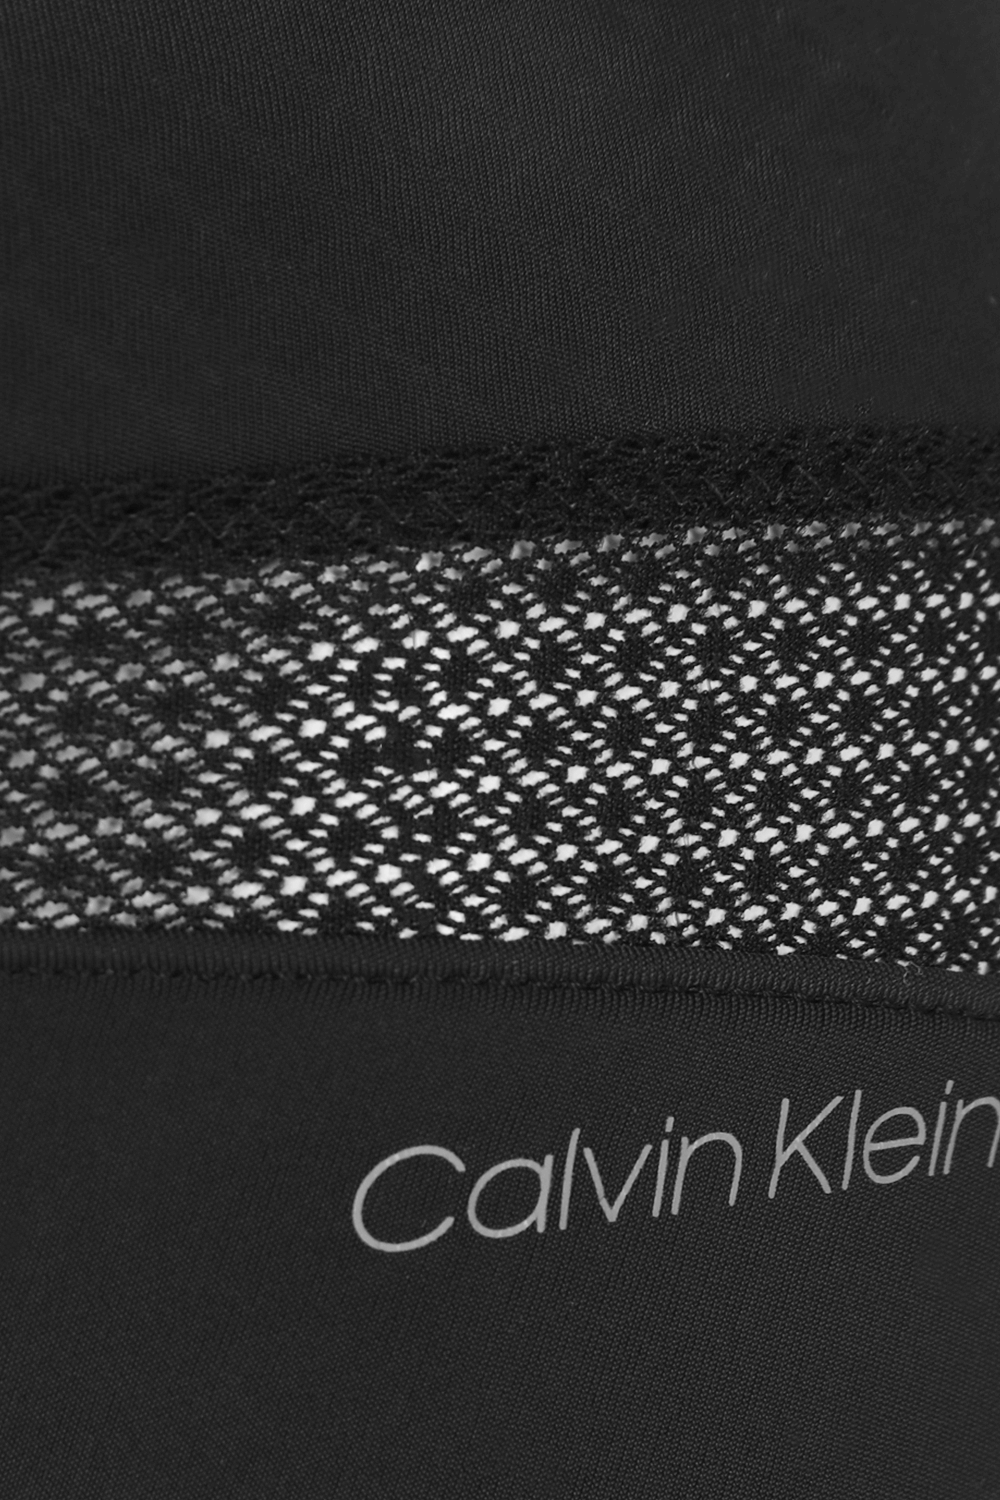 תחתוני חוטיני שחורים עם רצועת תחרה CALVIN KLEIN